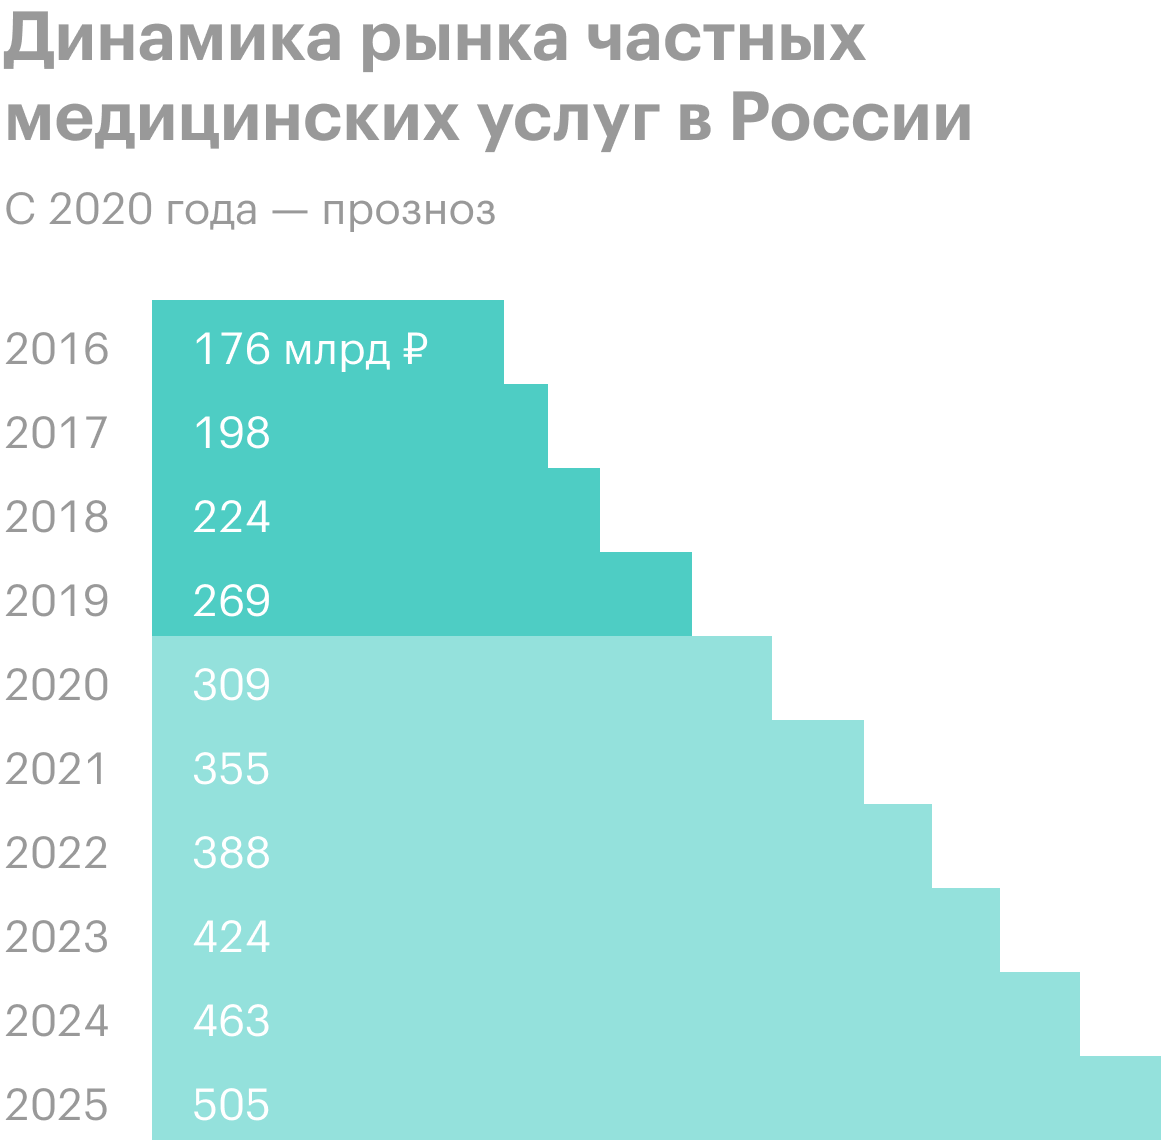 EMC ожидает, что в следующие пять лет рынок медицинских услуг в России будет расти двузначными темпами. Источник: презентация компании, слайд&nbsp;5